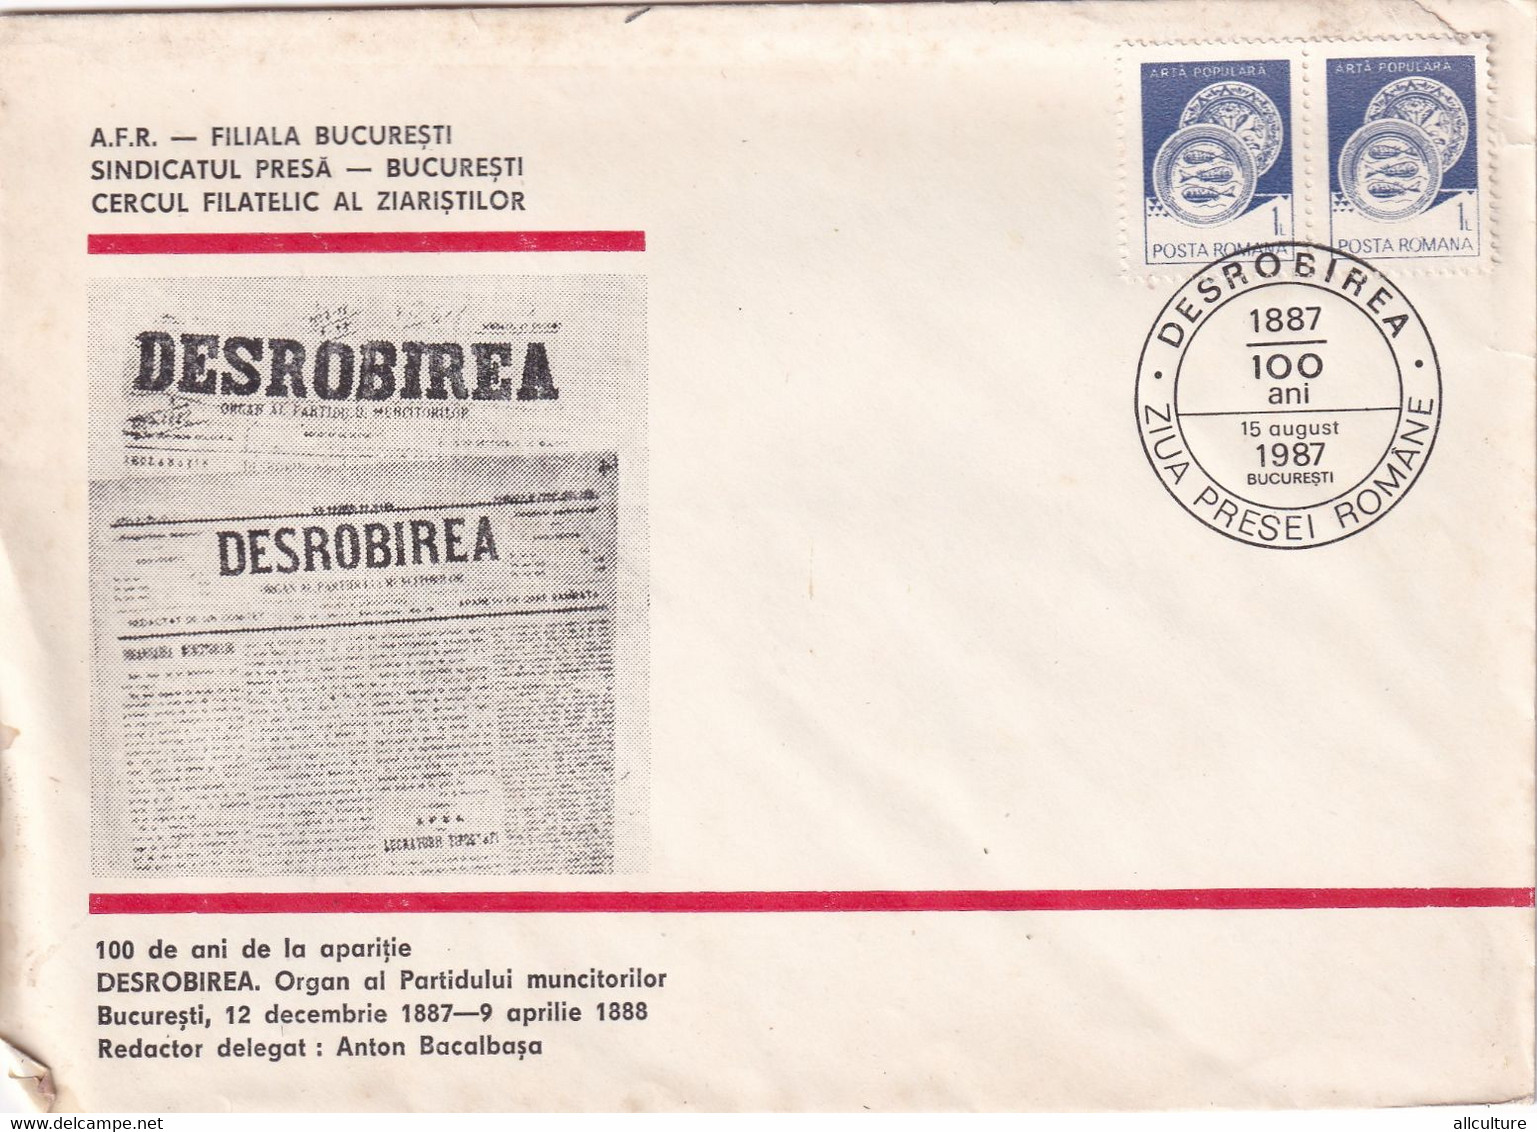 A3092 - 100 Ani Aparitia Organului Partidului Muncitorilor "Desrobirea", Bucuresti 1987 Romania Posta Romana - Covers & Documents